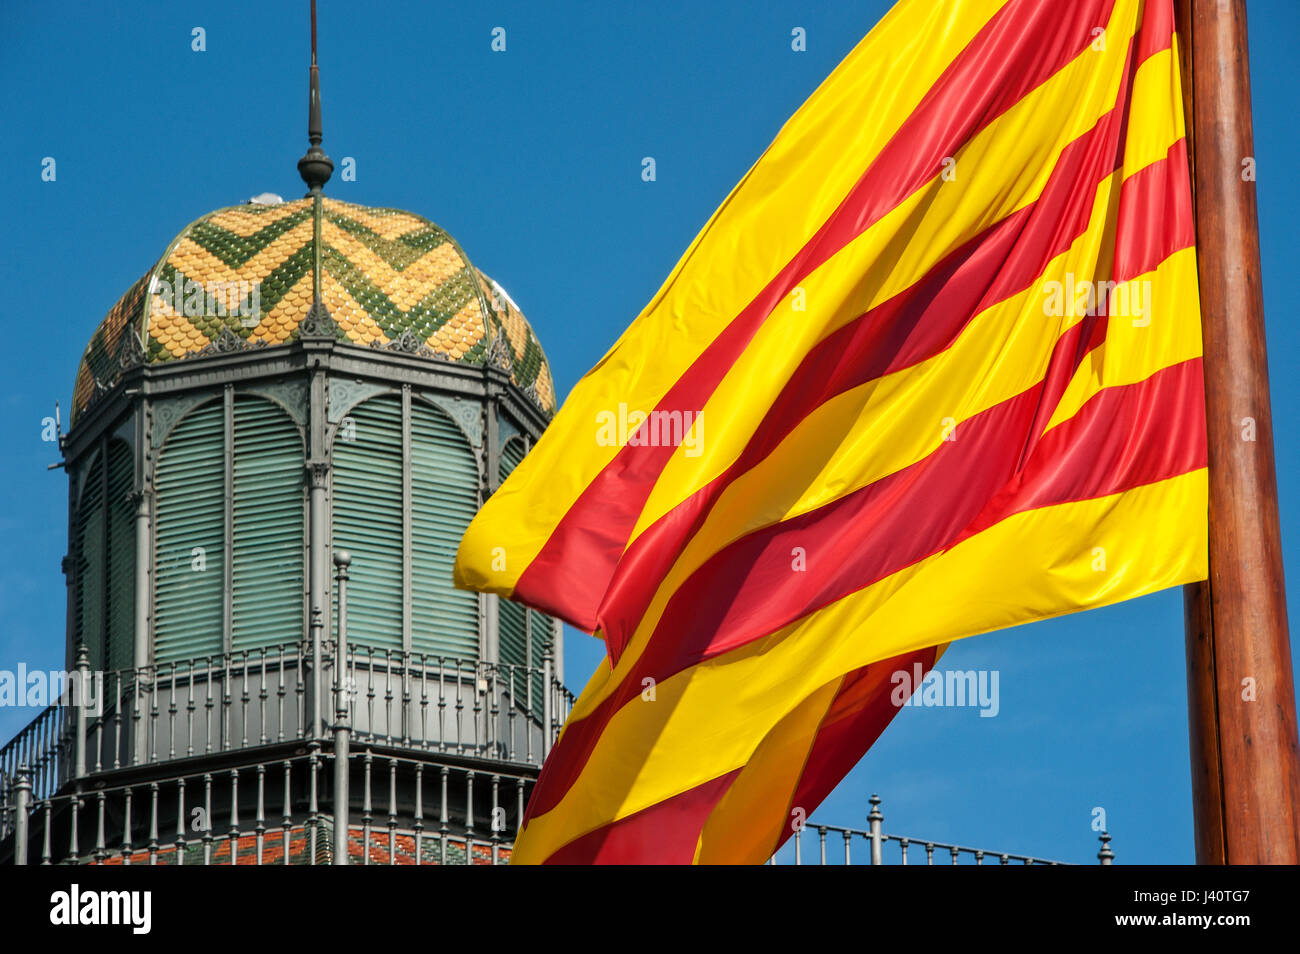 Katalanische Fahne vor der alten Markthalle El Born, dem heutigen Kultur- und Erinnerungszentrum, Centro de Cultura ho memoria. Foto Stock